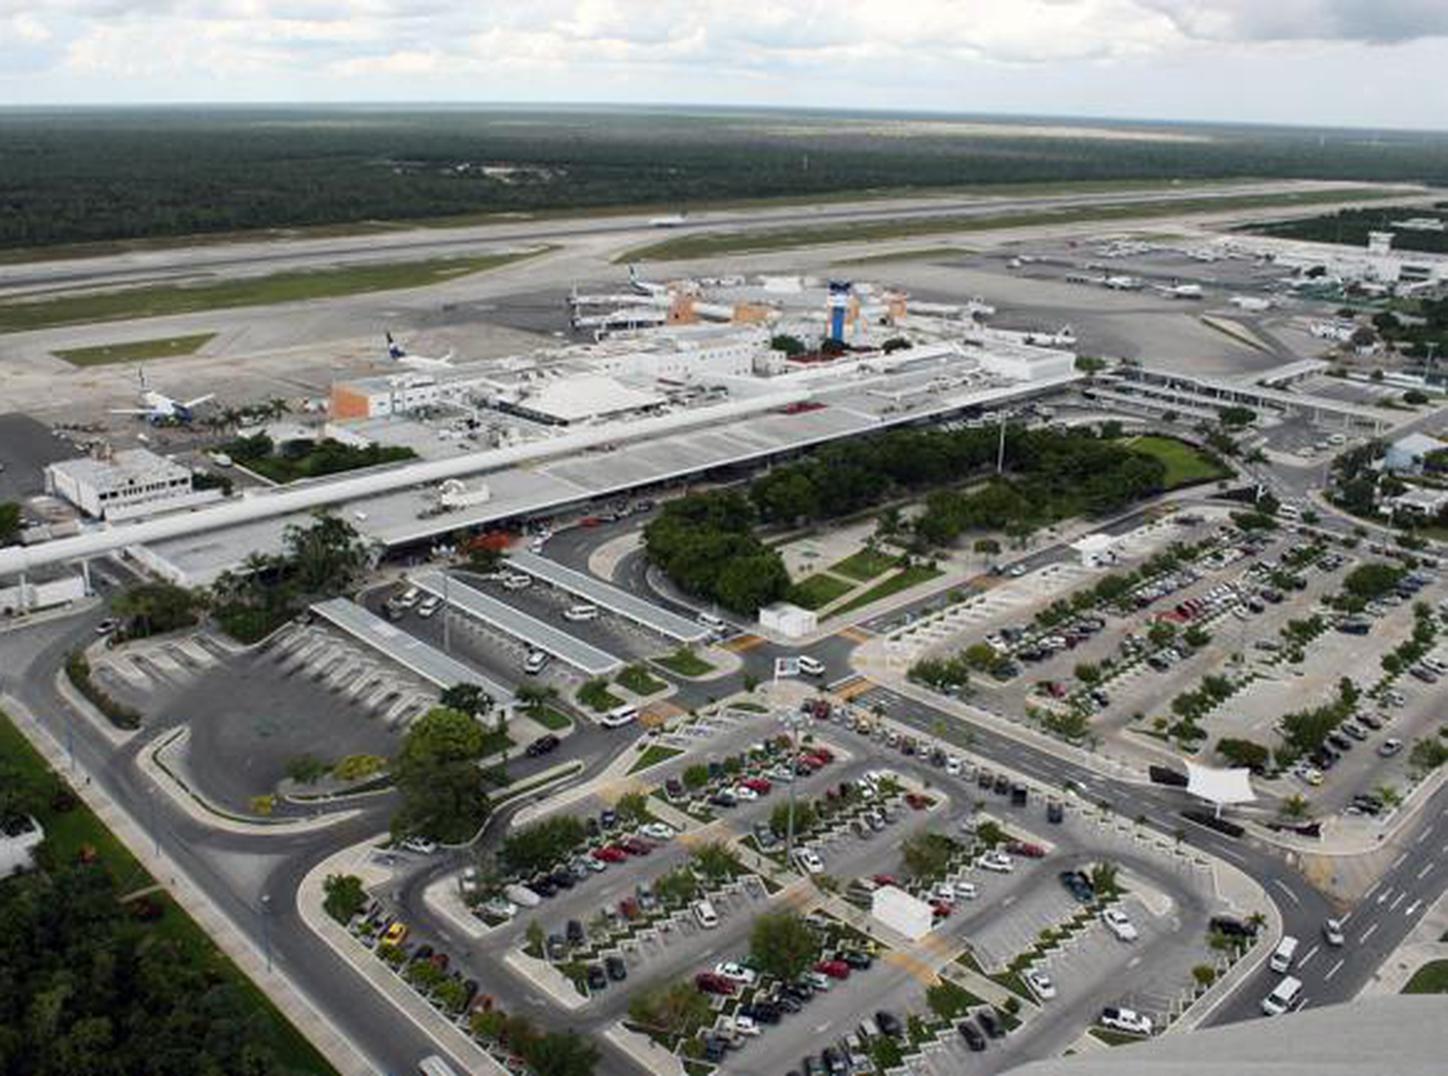 Aeropuerto de Cancún